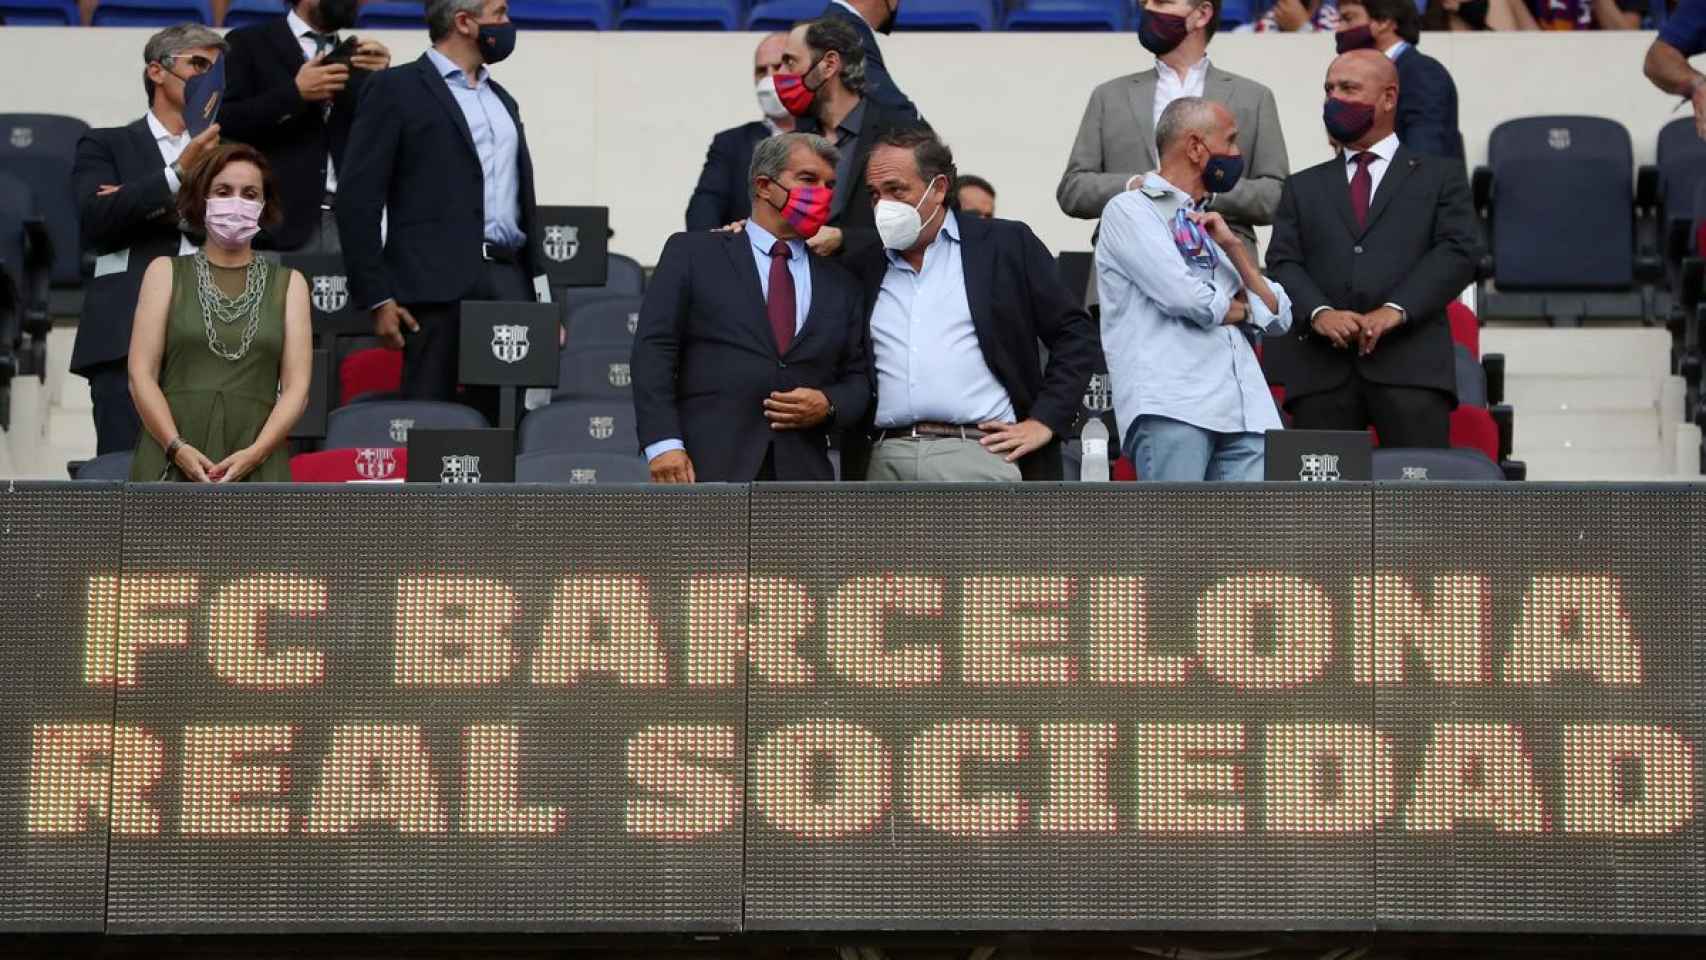 Joan Laporta, en la imagen en el palco antes del partido contra la Real Sociedad, planea cómo seguir reduciendo la masa salarial / FCB